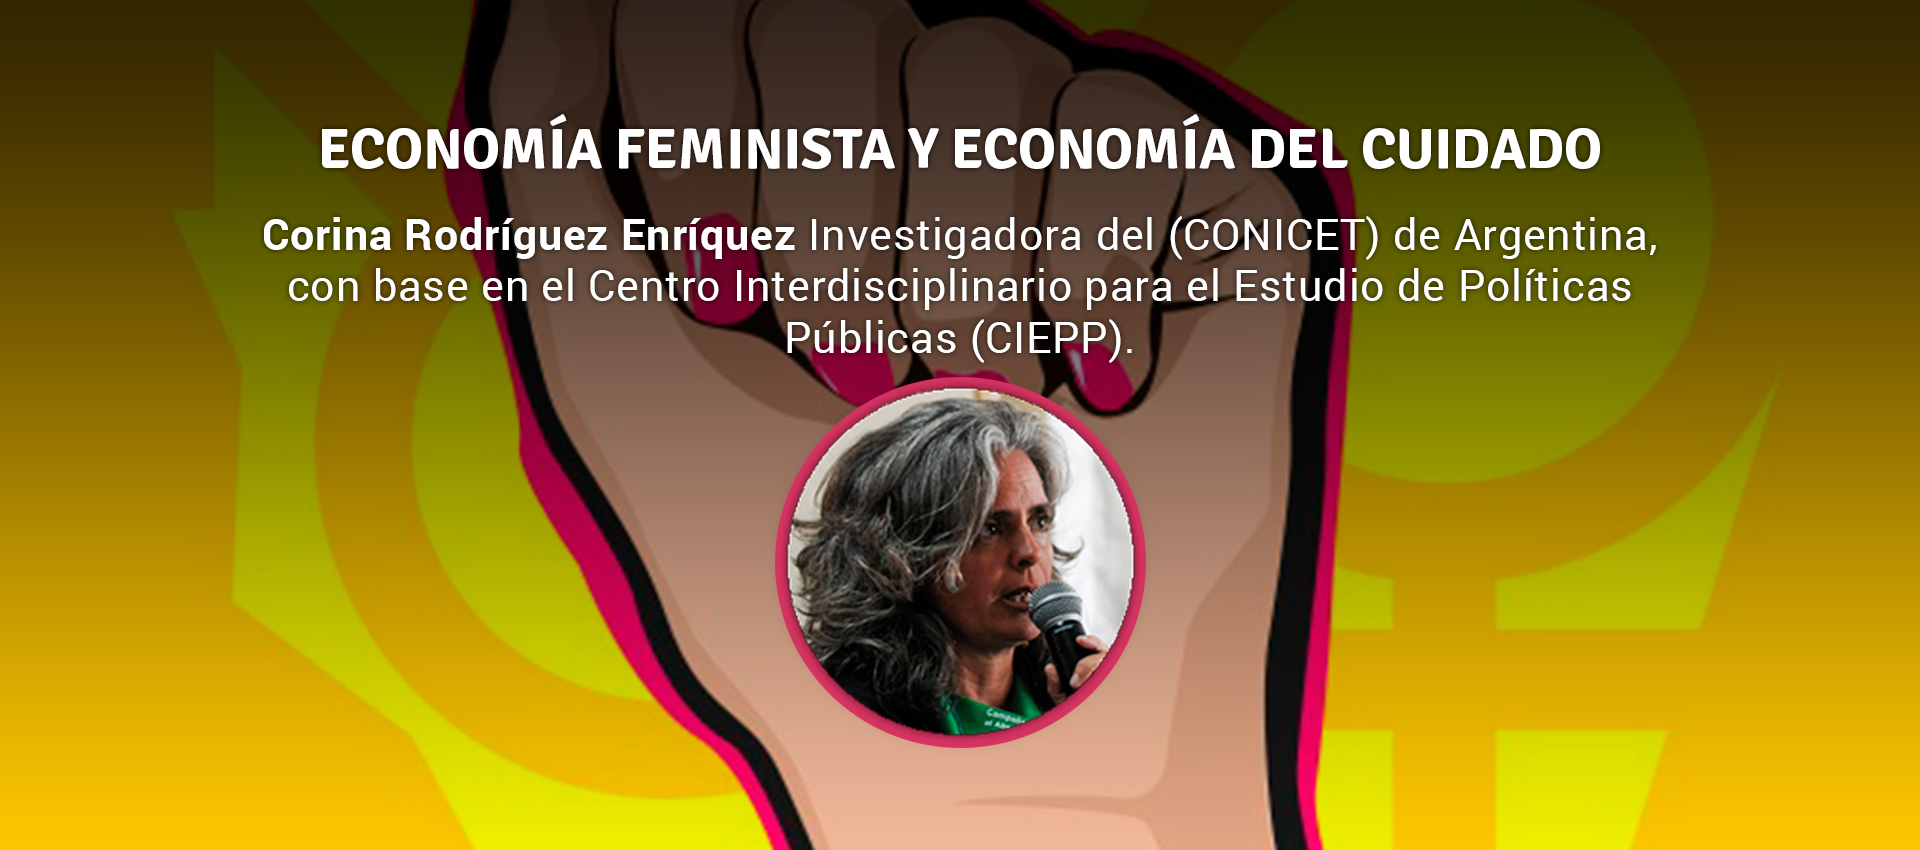 Rodriguez Enriquez - ECONOMÍA FEMINISTA Y ECONOMÍA DEL CUIDADO